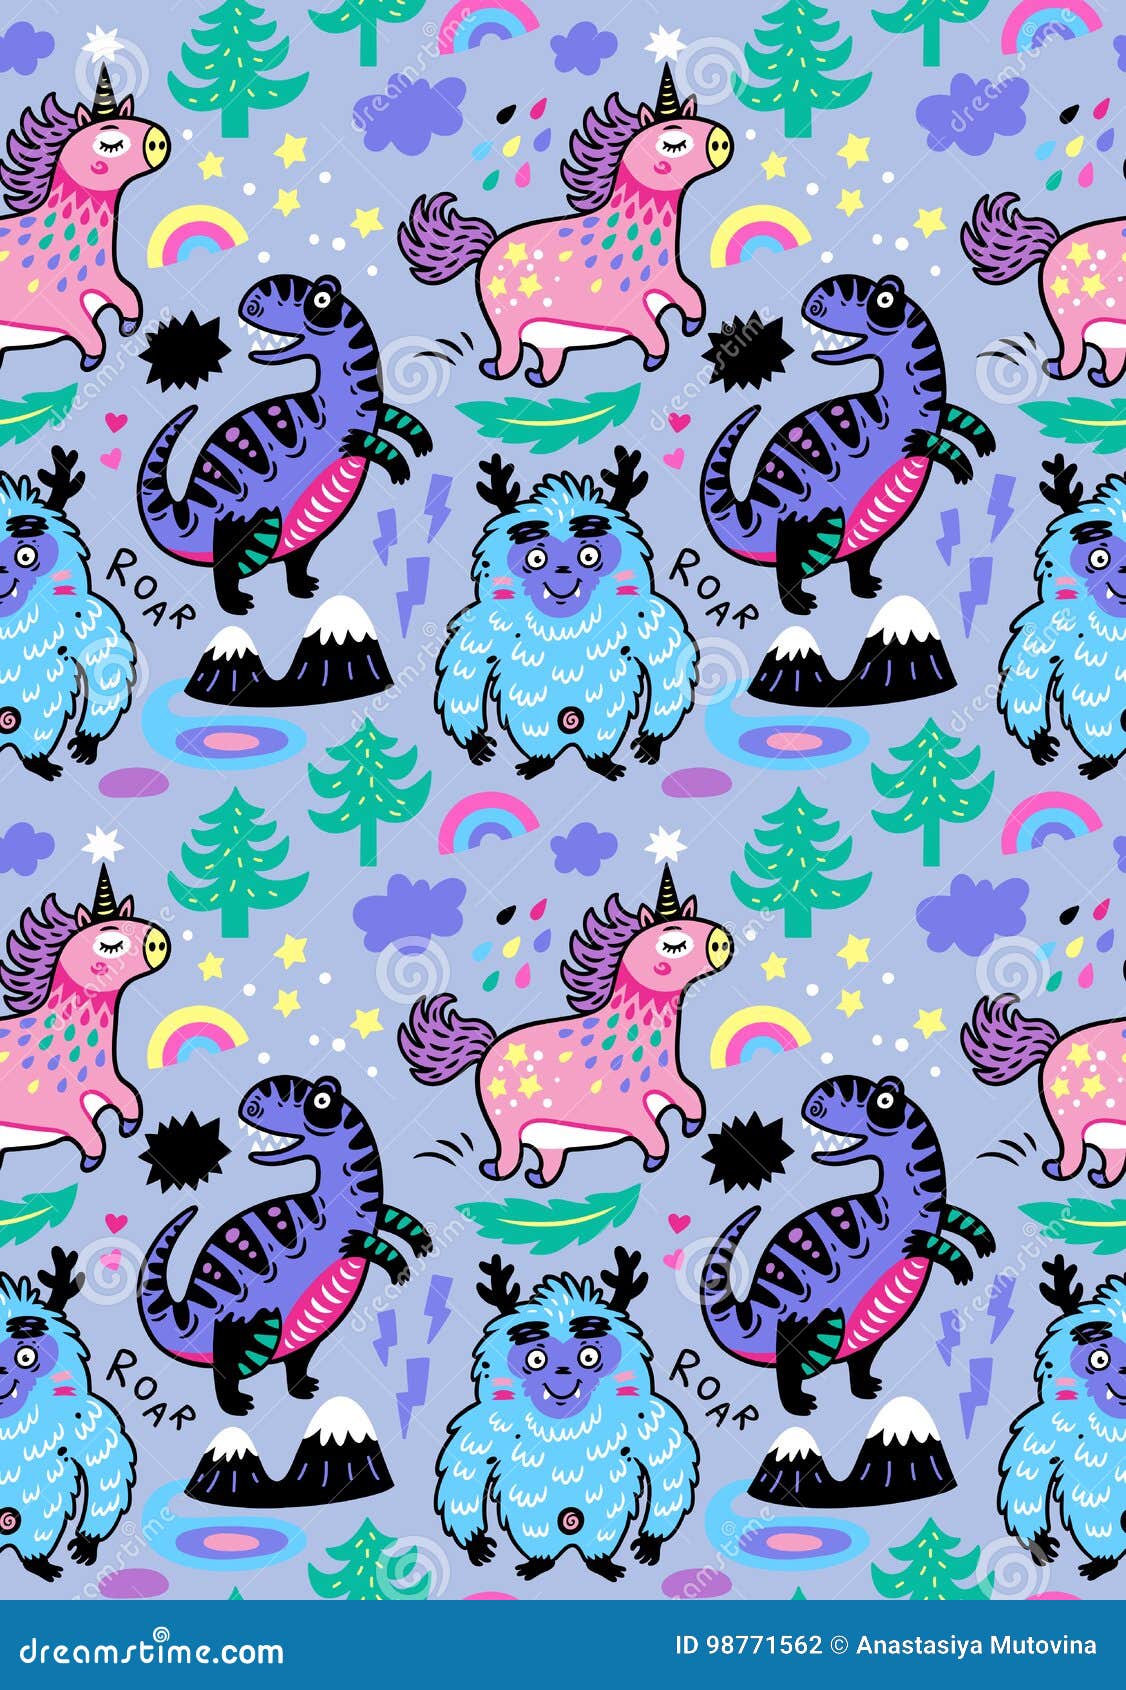 100 Cute Pink Dinosaur Wallpapers  Wallpaperscom